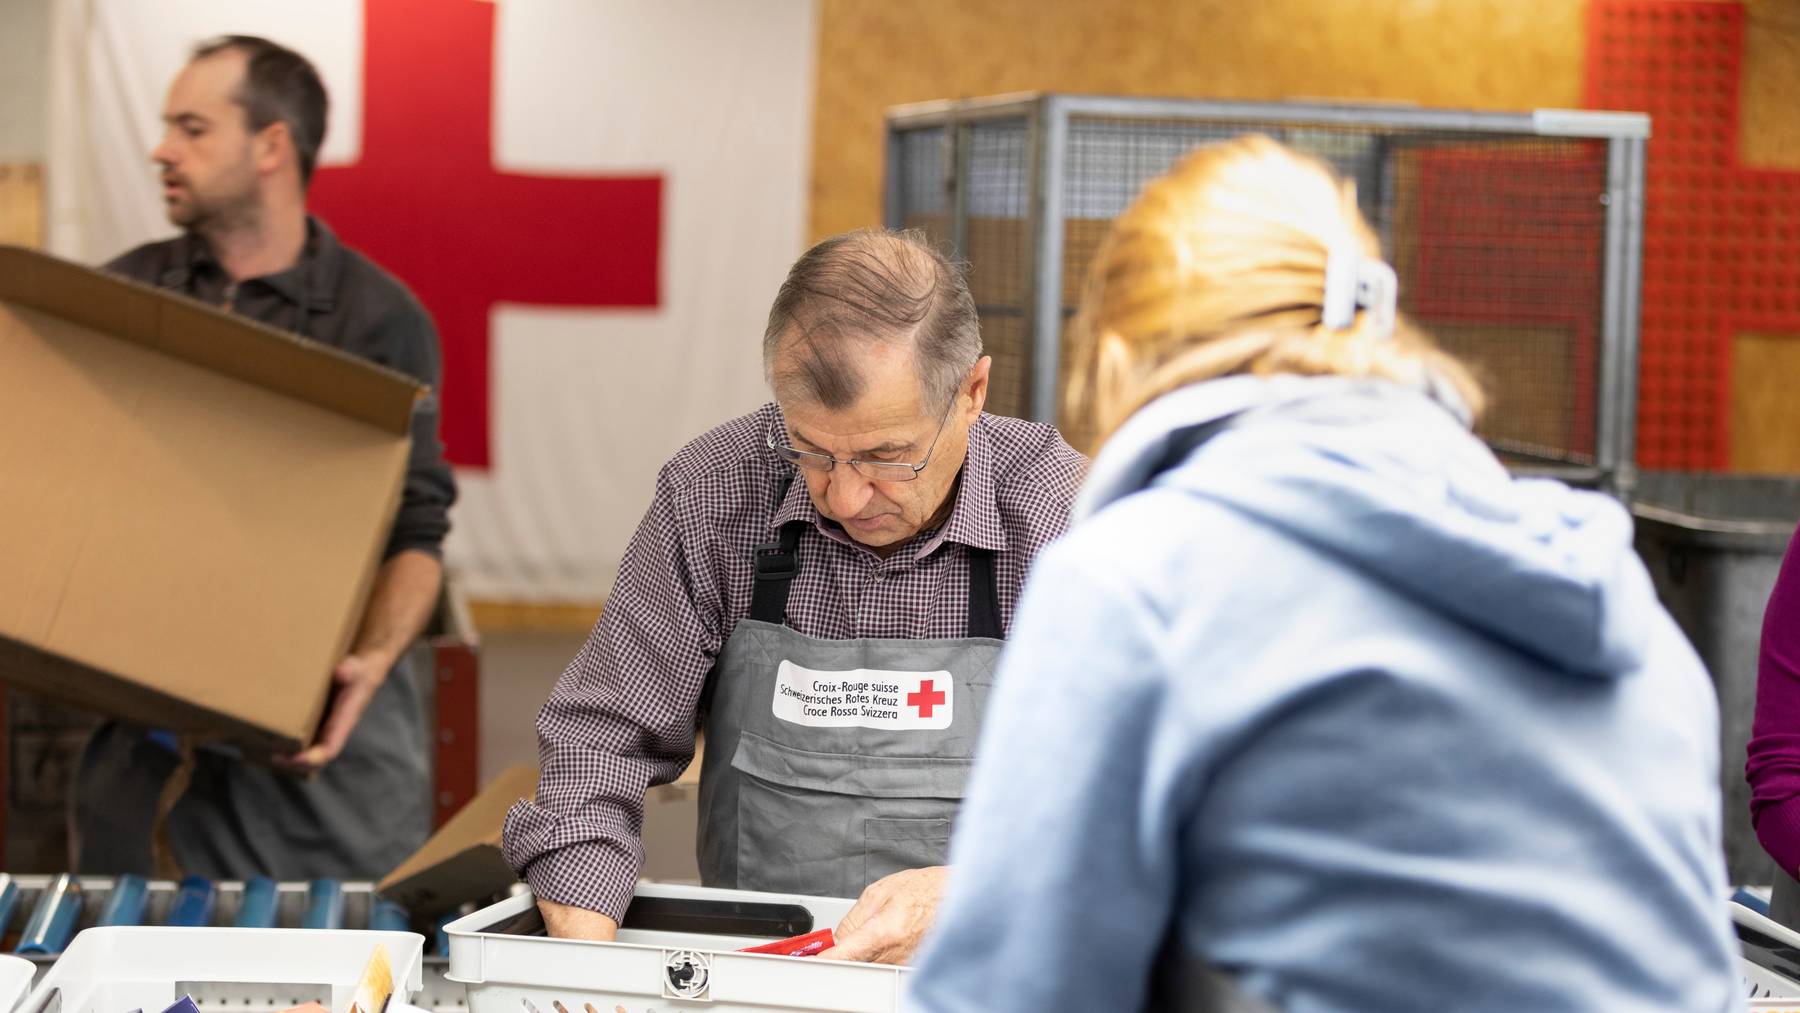 Das Rote Kreuz sucht nach jüngeren Helferinnen und Helfern. (Symbolbild)